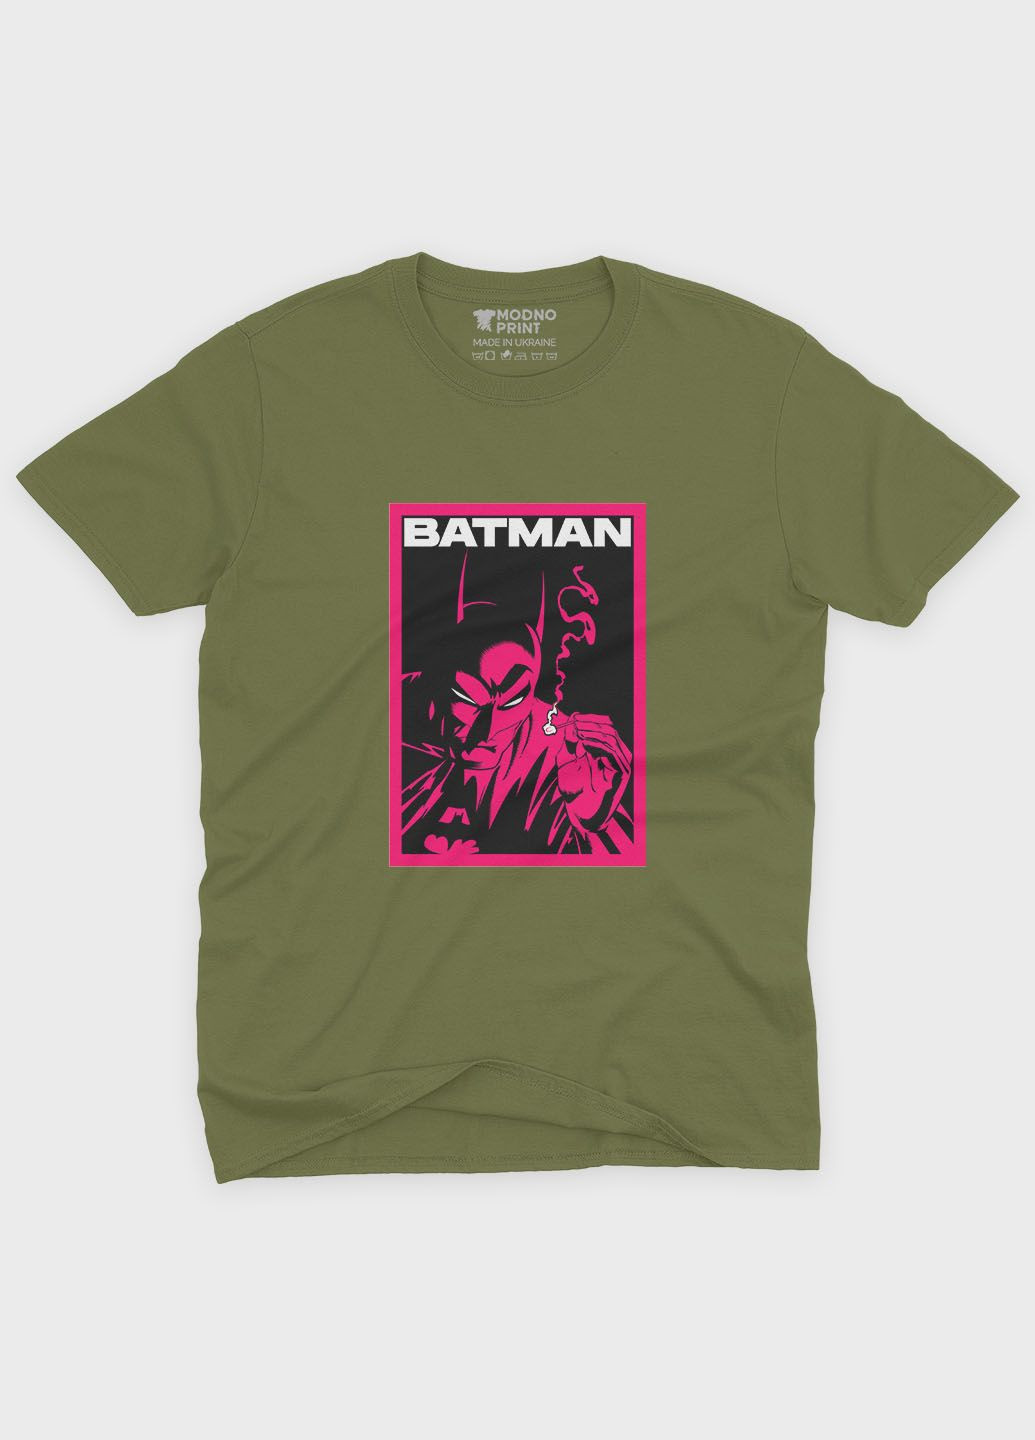 Хаки (оливковая) мужская футболка с принтом супергероя - бэтмен (ts001-1-hgr-006-003-023) Modno